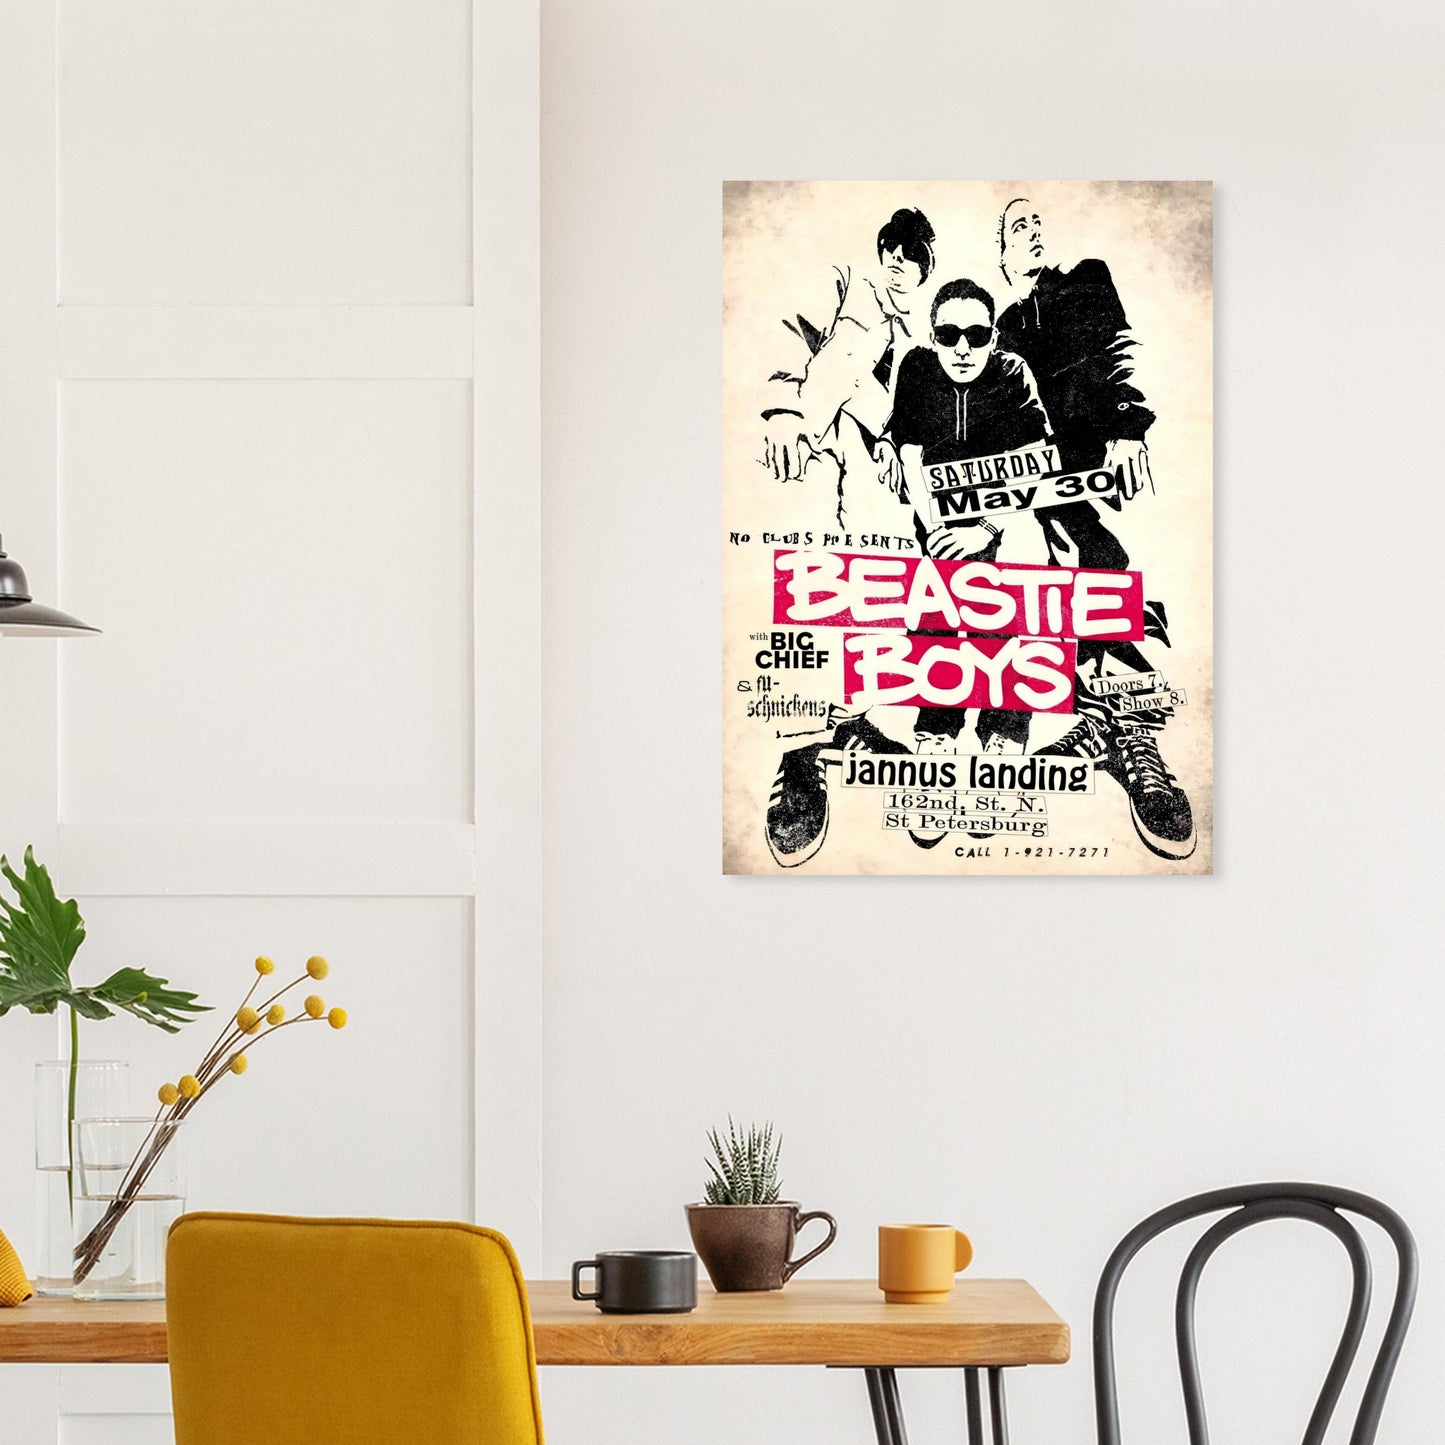 Bestie Boys Vintage Poster Reprint on Premium Matte Paper - Posterify